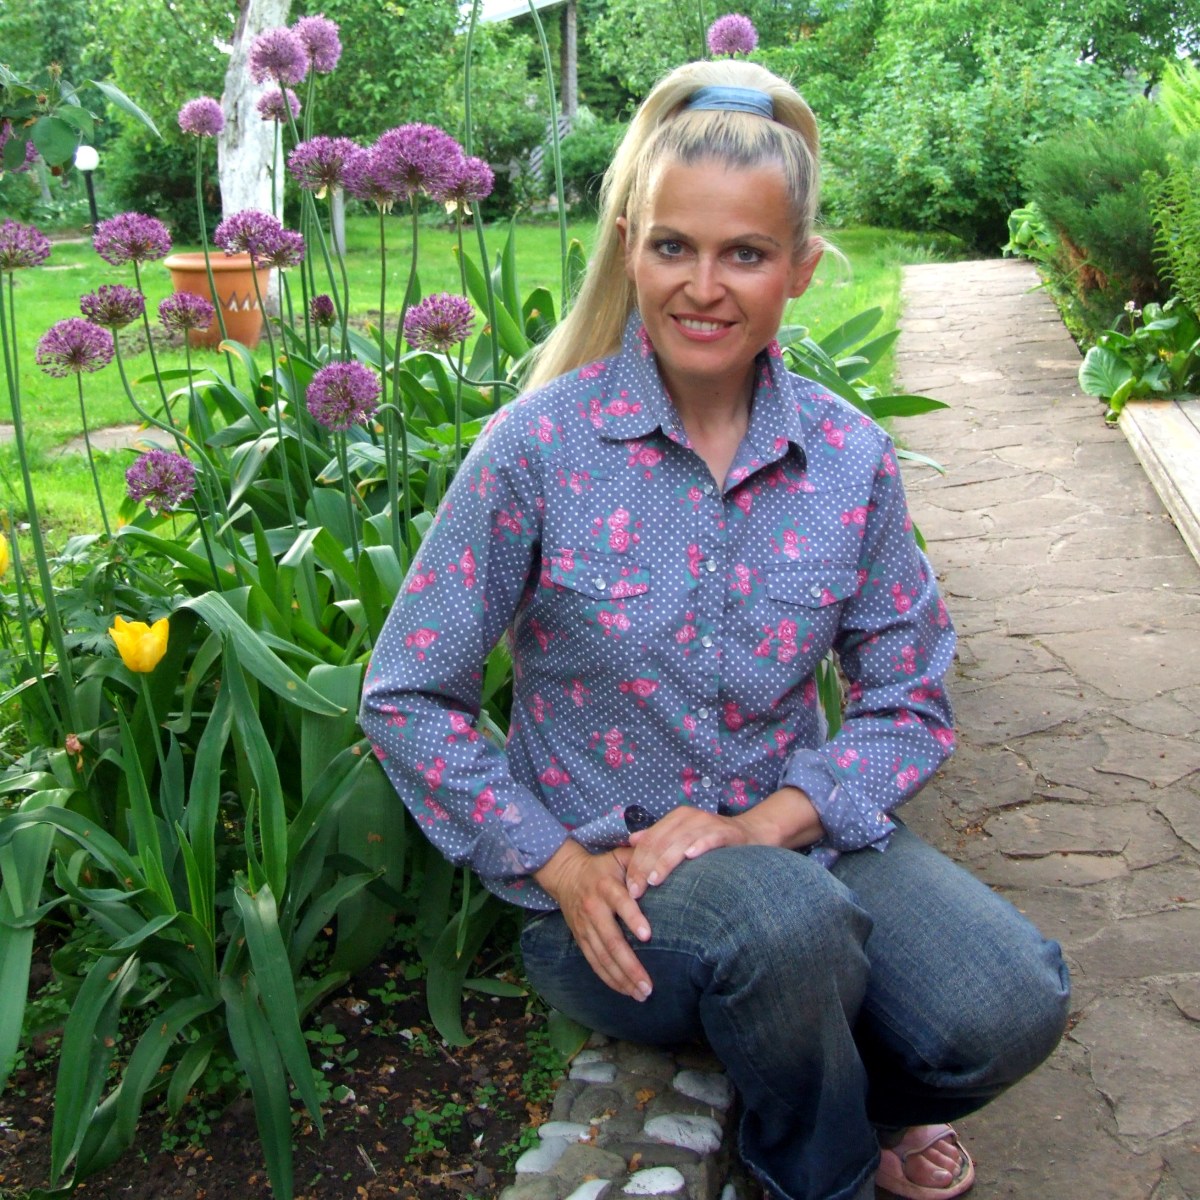 Автор курса - Ольга Воронова, ландшафтный дизайнер, автор книг по садоводству, телеведущая и преподаватель Международной школы дизайна.